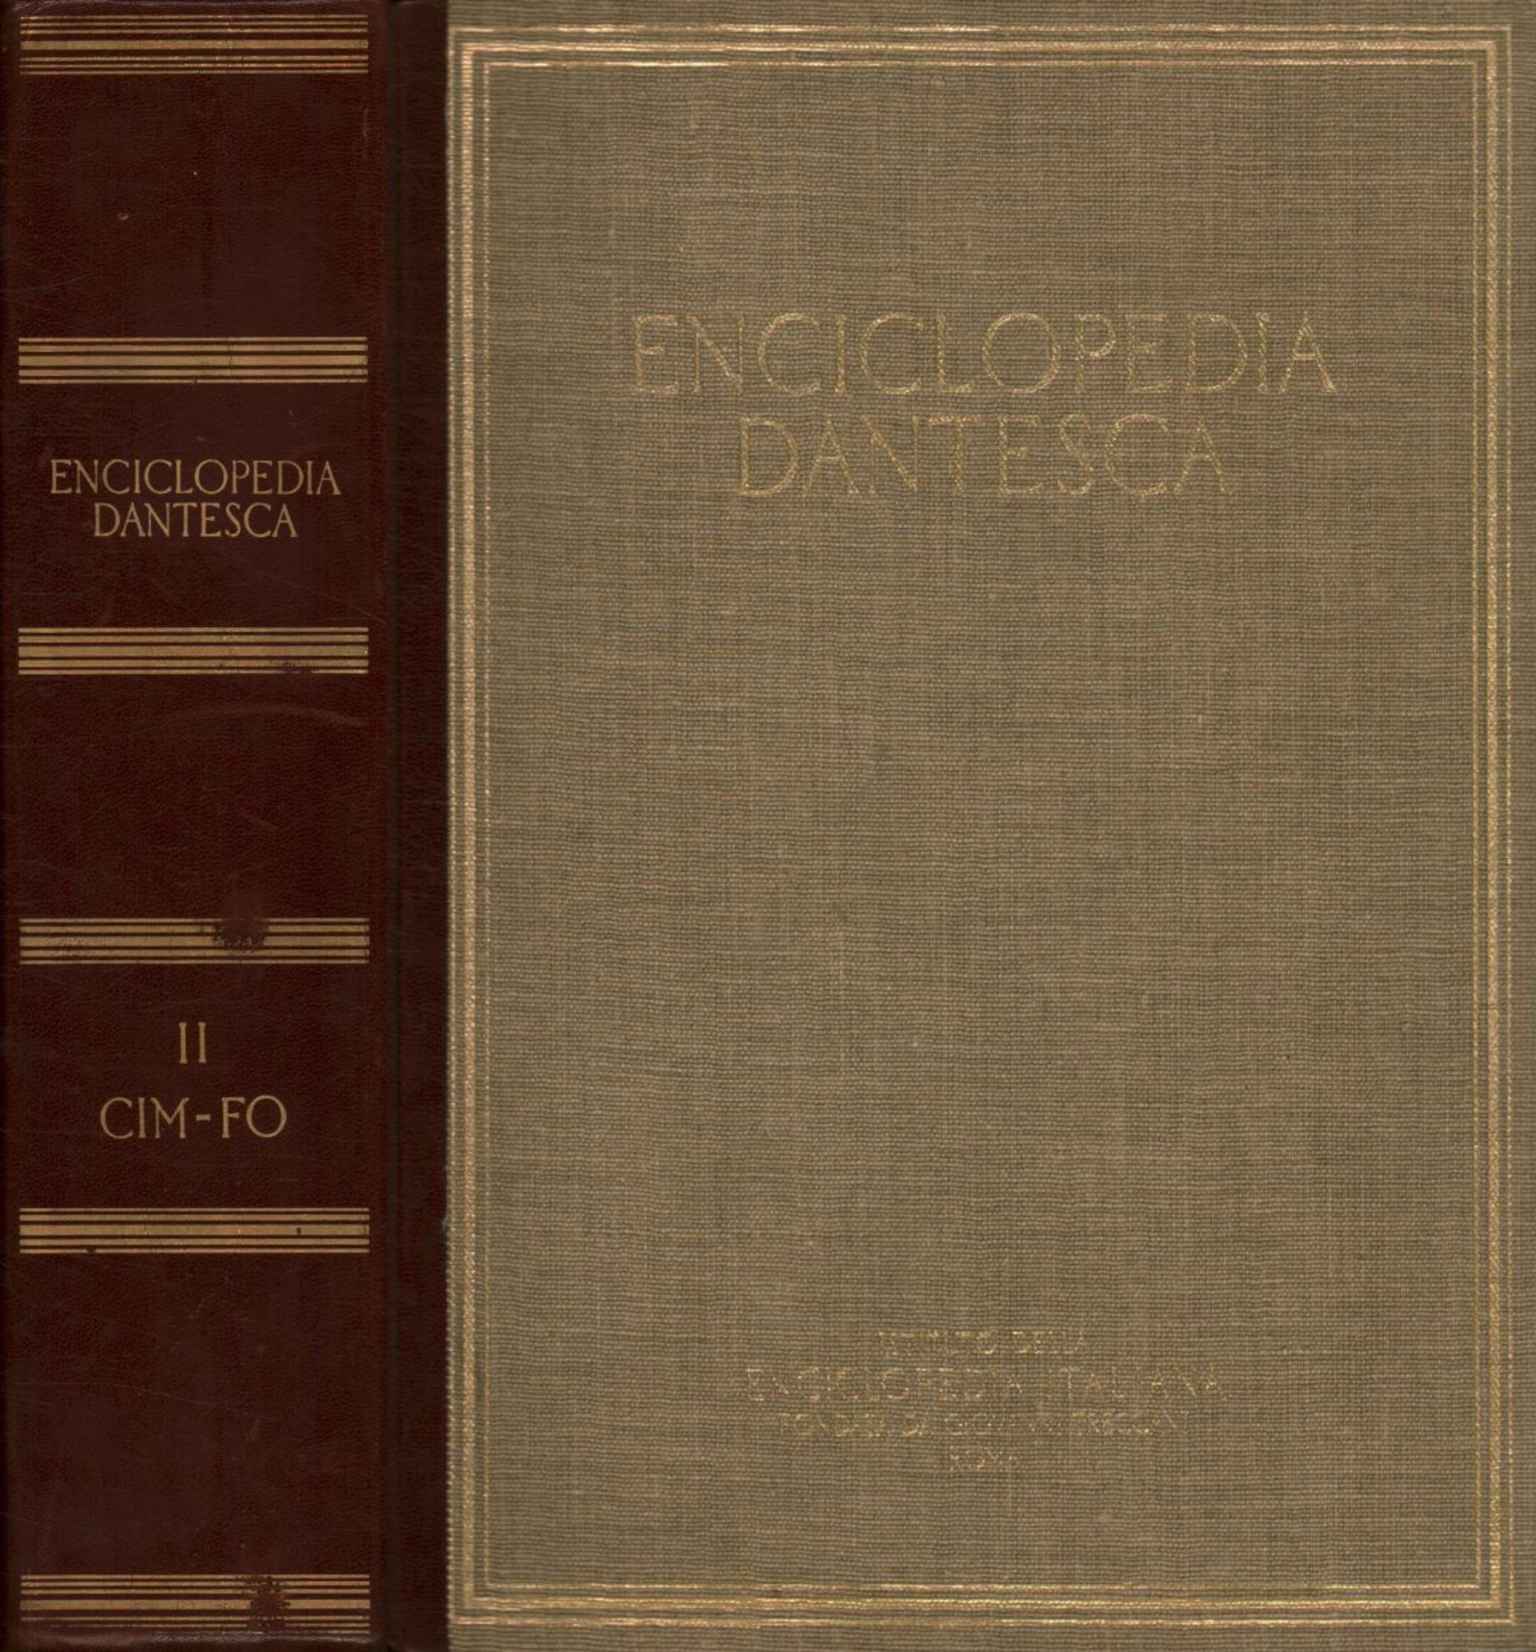 Dante's encyclopedia. CIM-FO (Volume II)